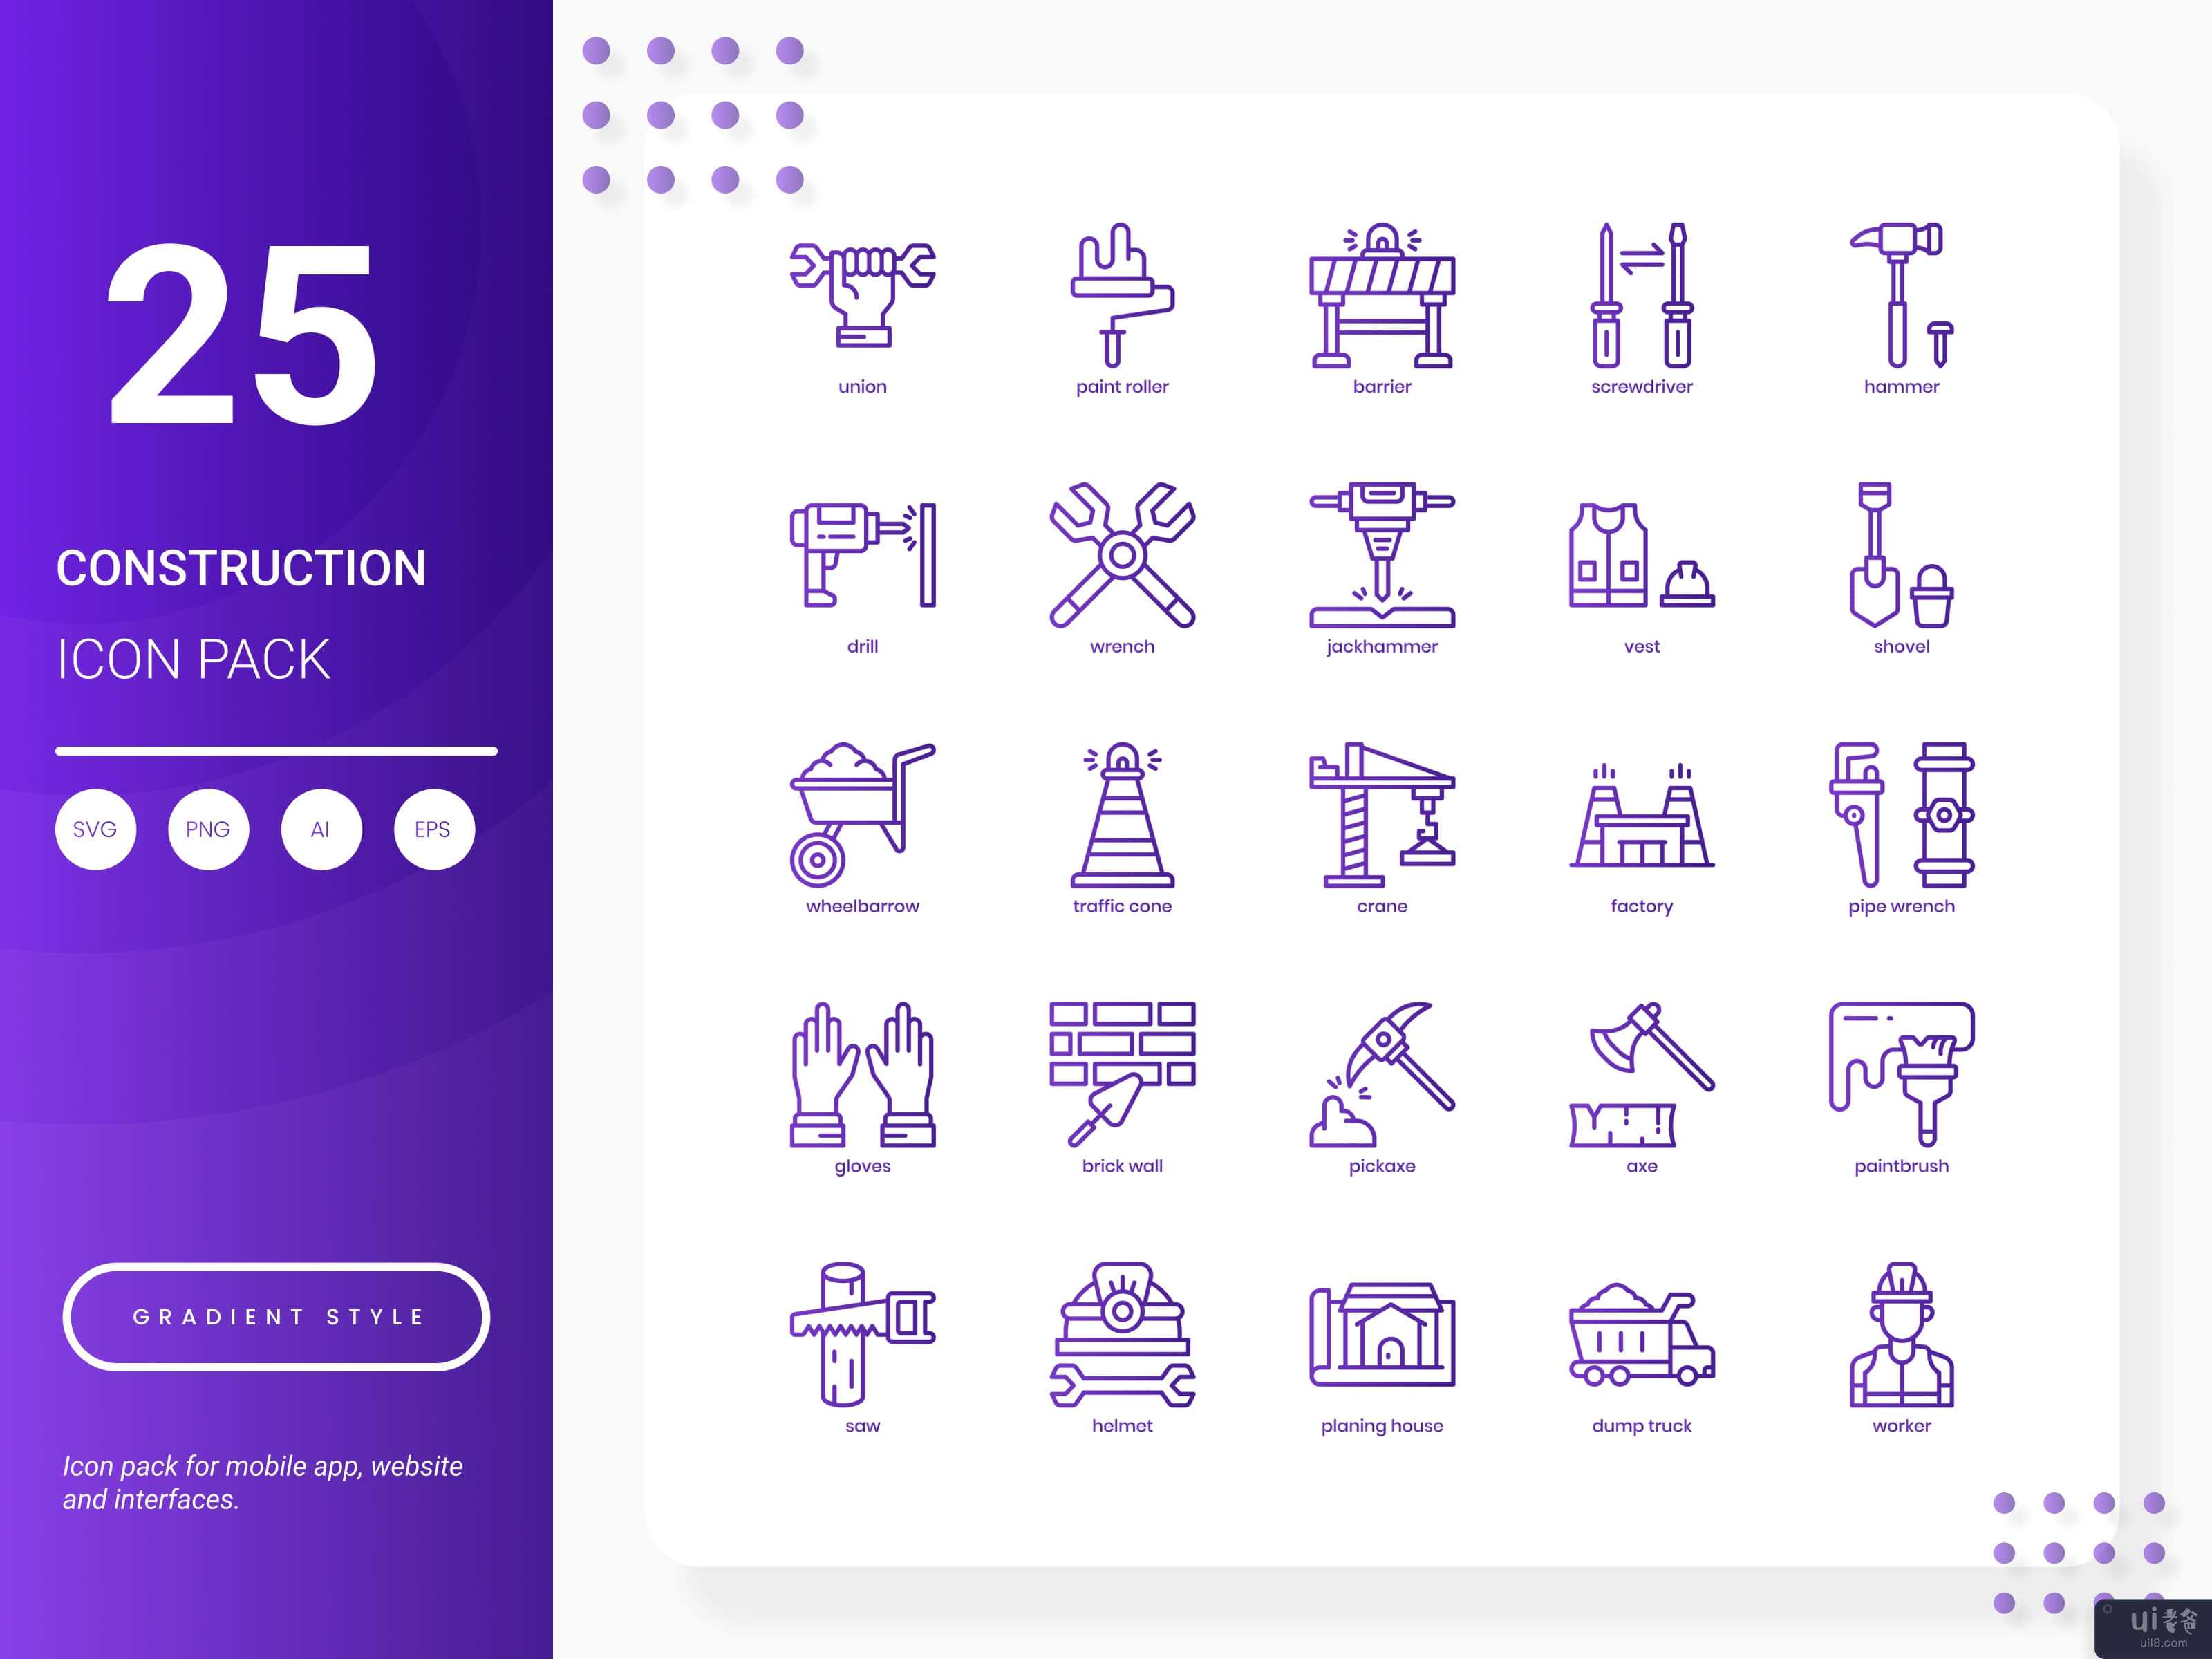 建筑图标包(Construction Icon Pack)插图